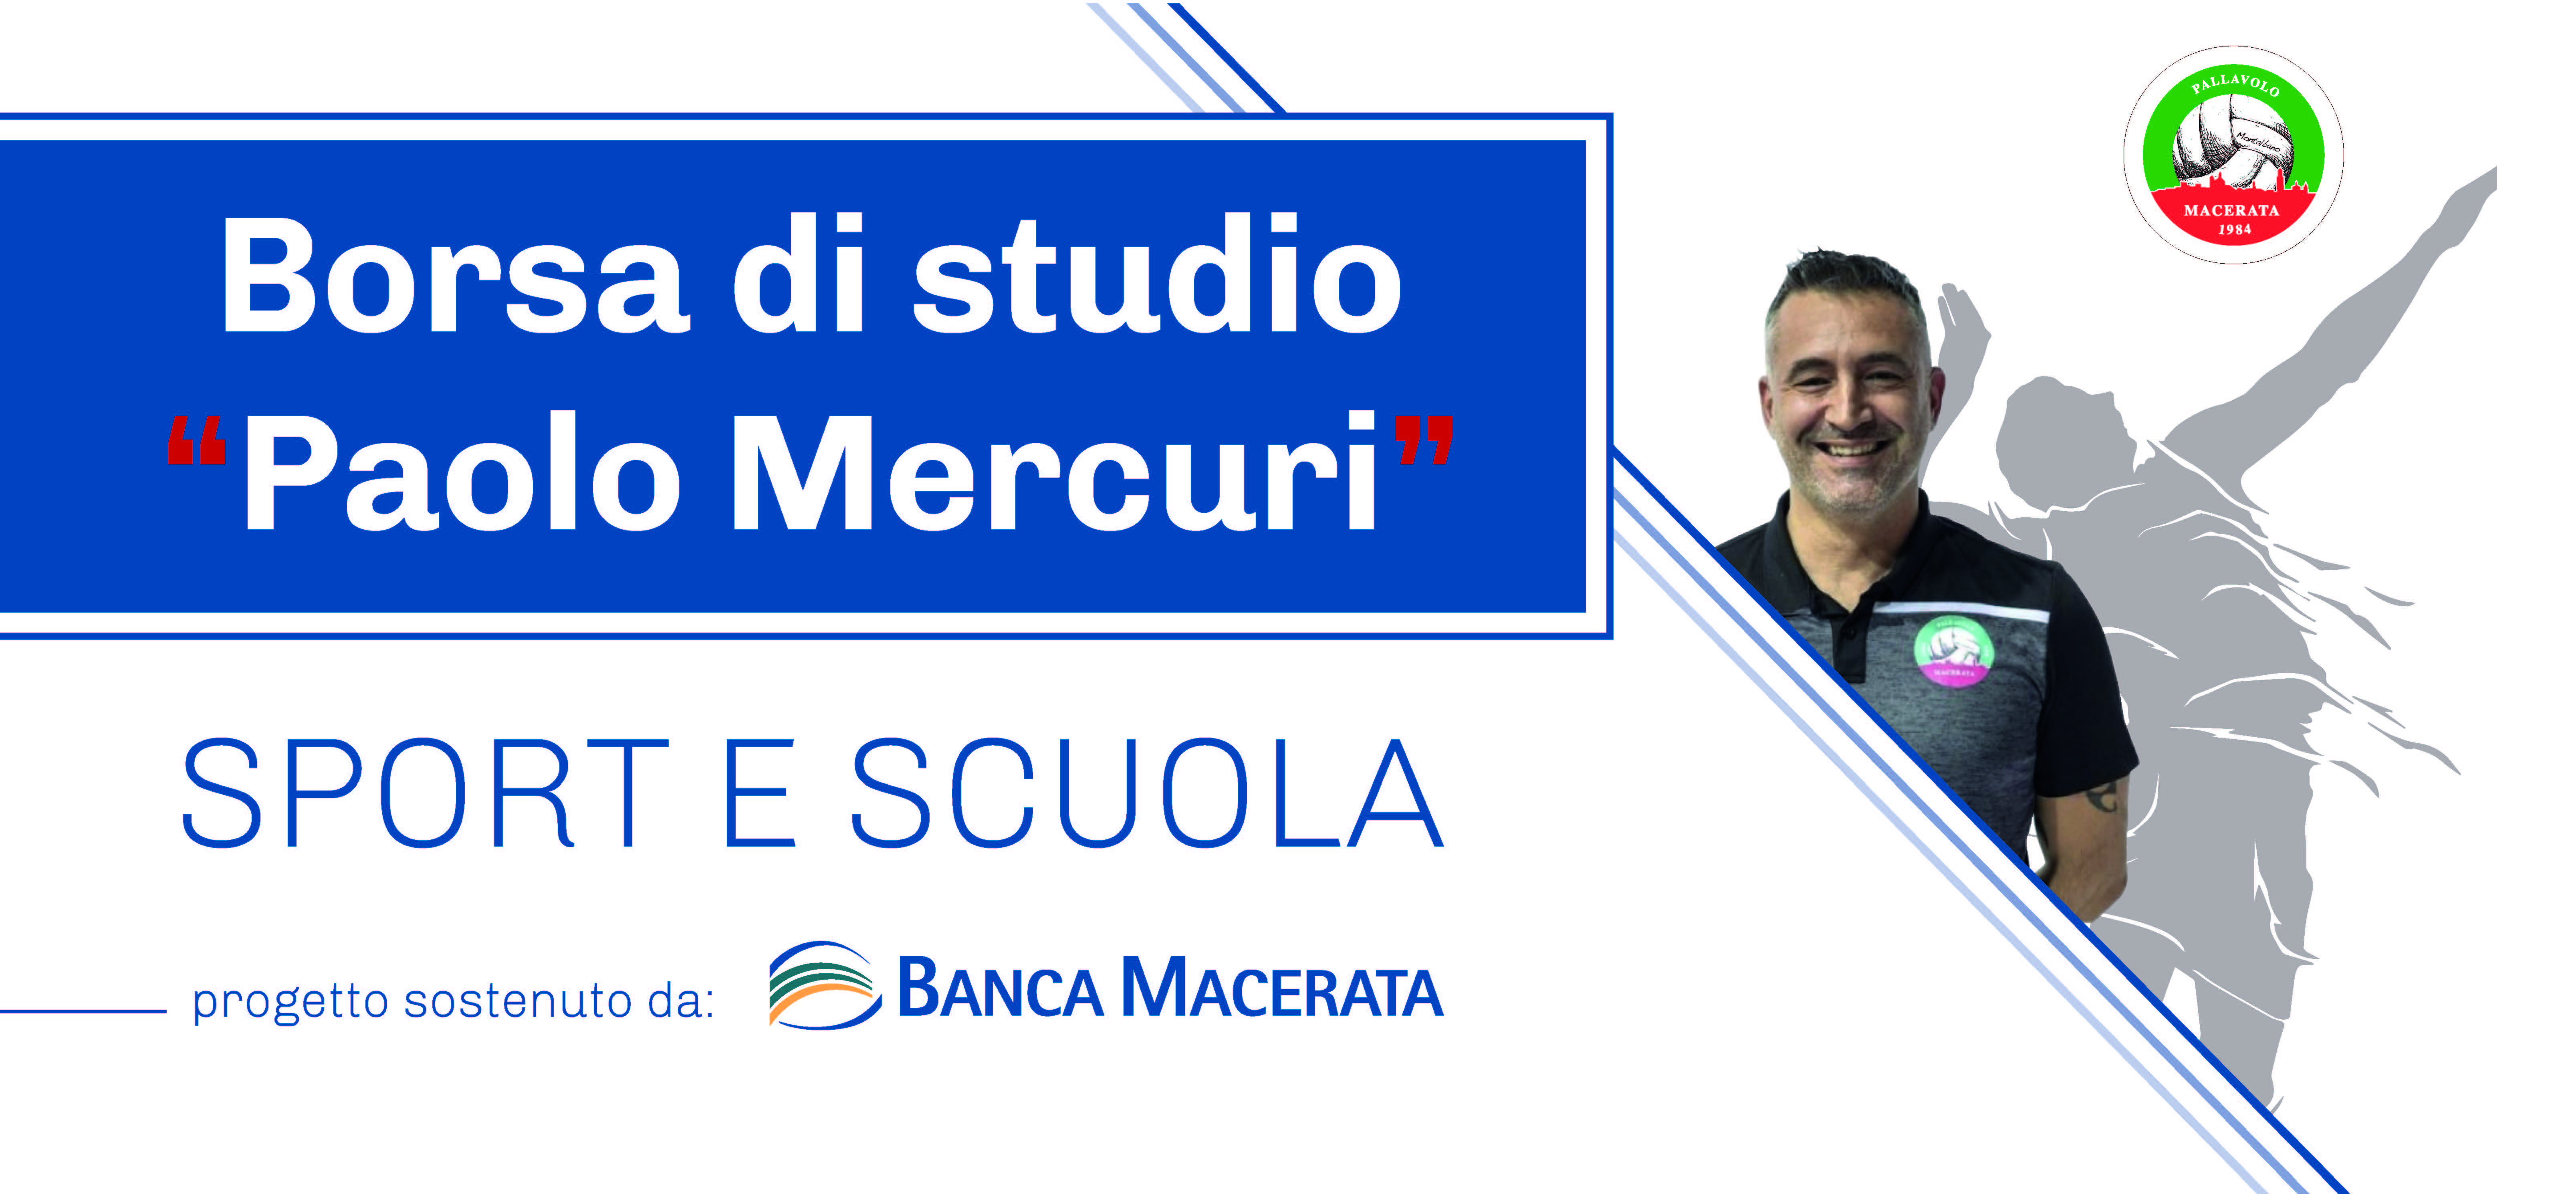 Assegnate le due borse di studio sport e scuola “Paolo Mercuri” | Banca Macerata 1